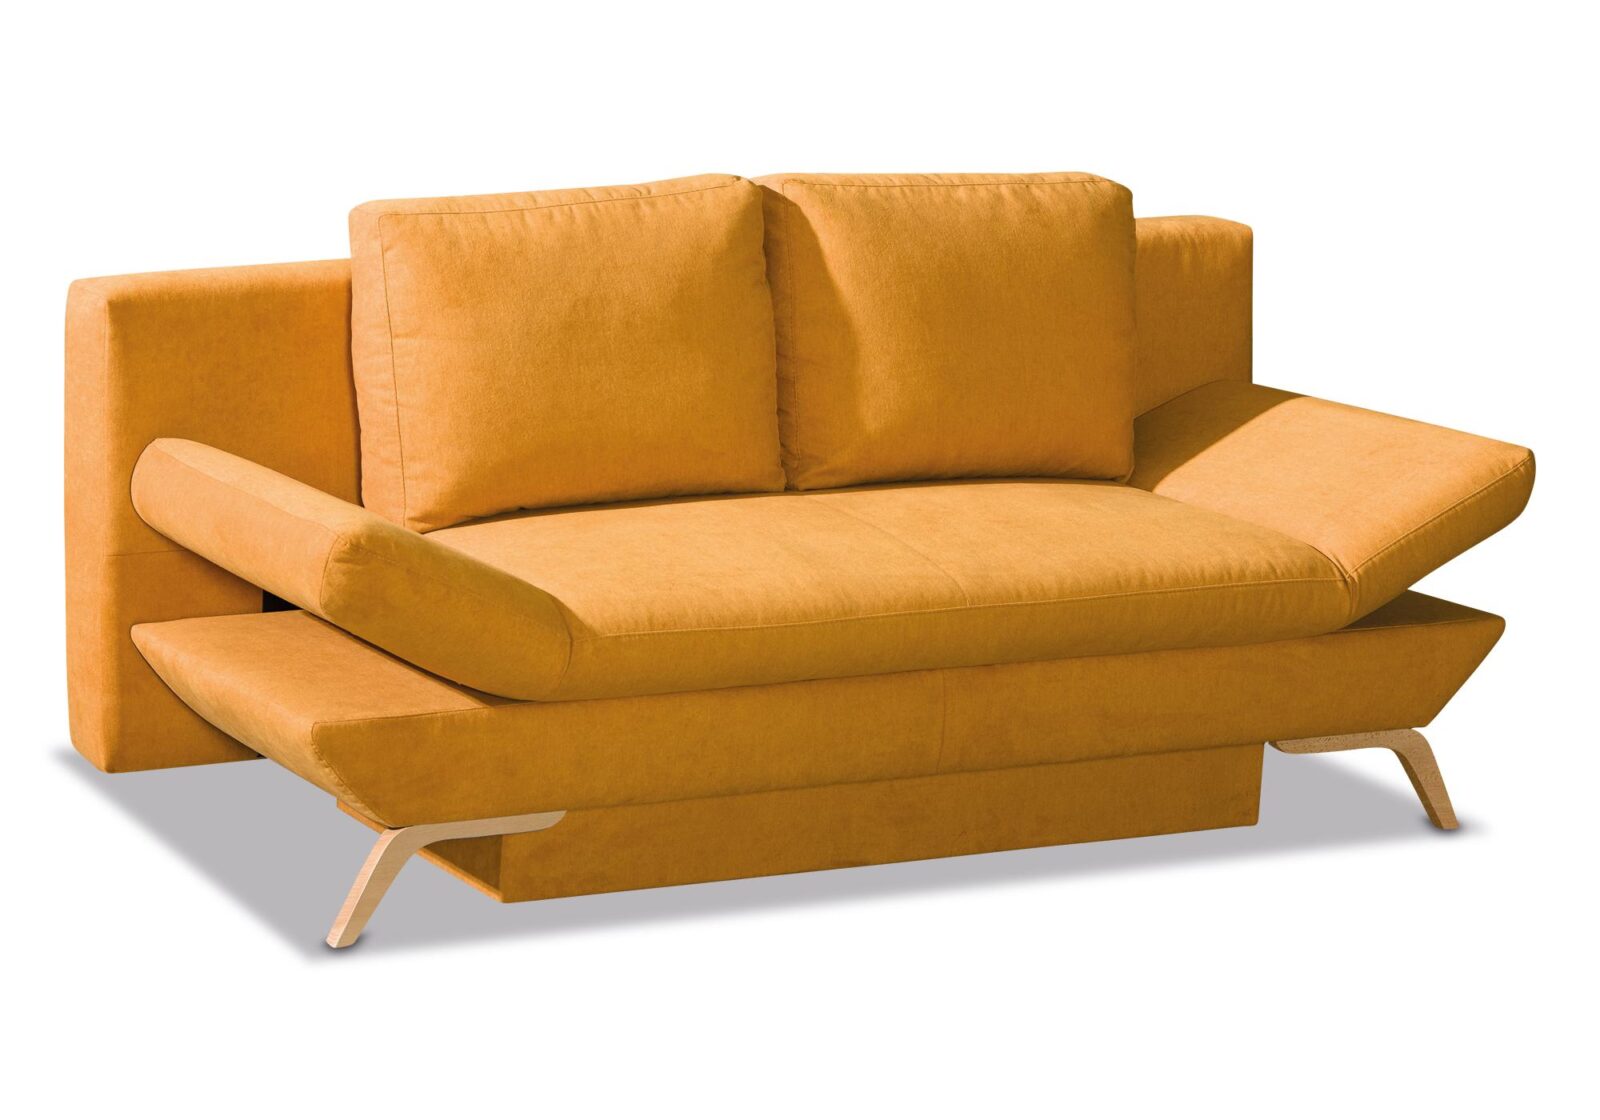 Querschläfer Onyx mit Bettkasten. Bezug: Stoff. Farbe: Gelb. Erhältlich bei Möbel Gallati.